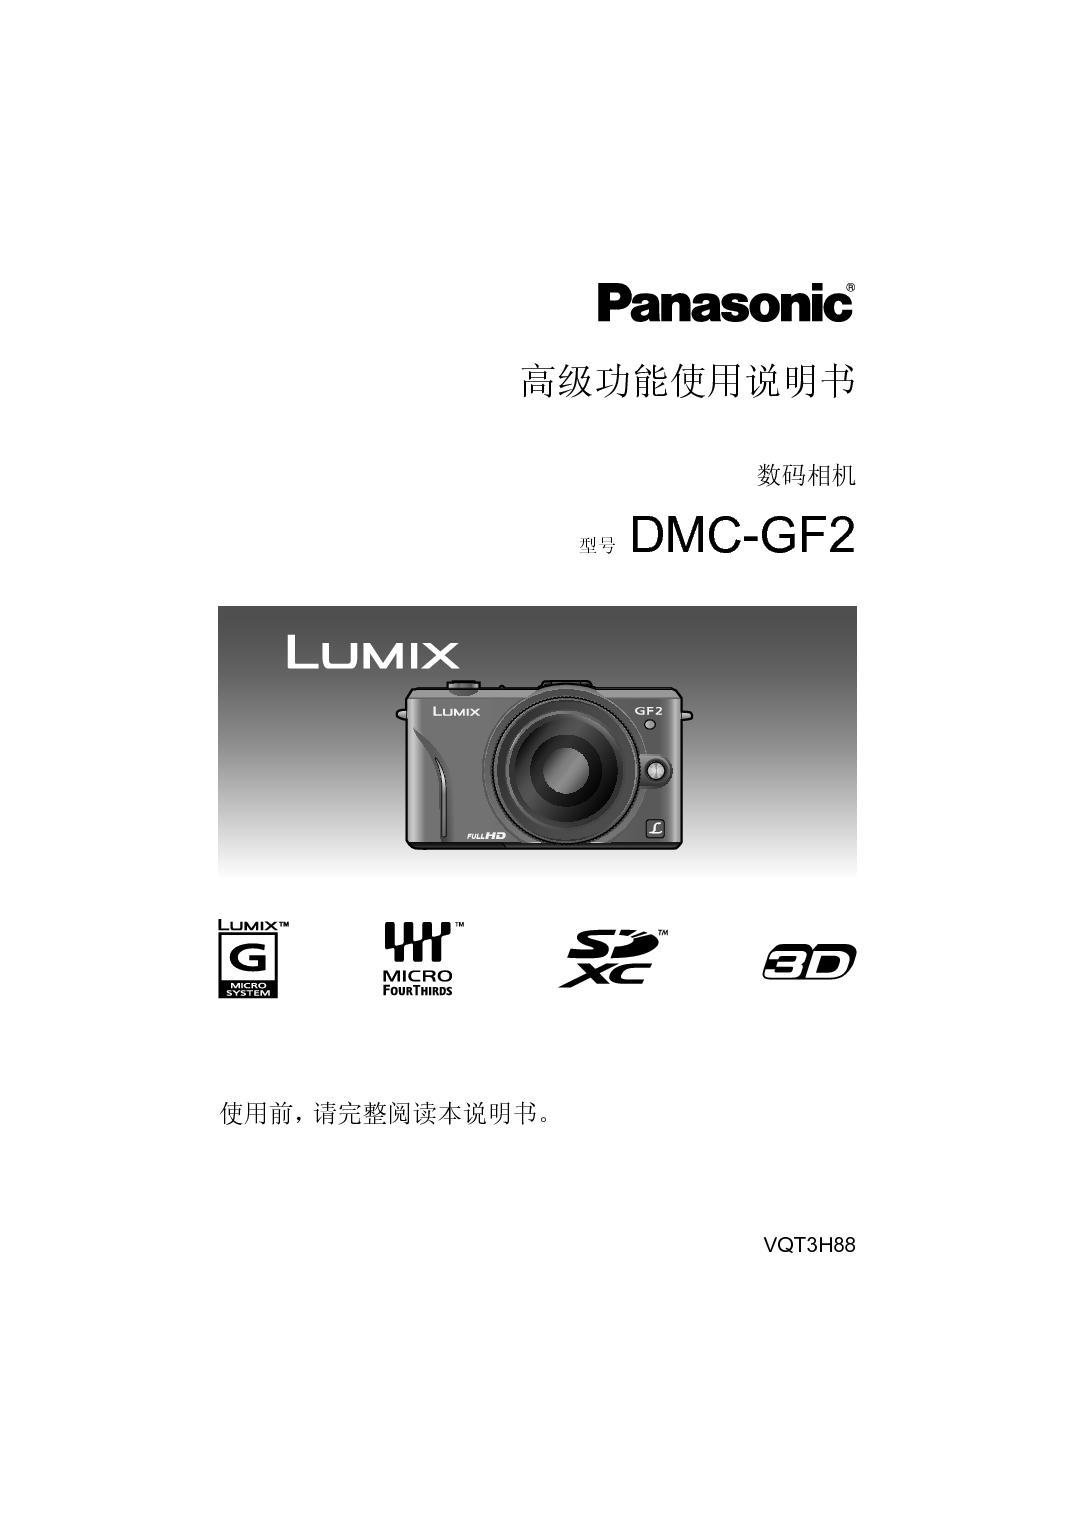 松下 Panasonic DMC-GF2GK 高级说明书 封面